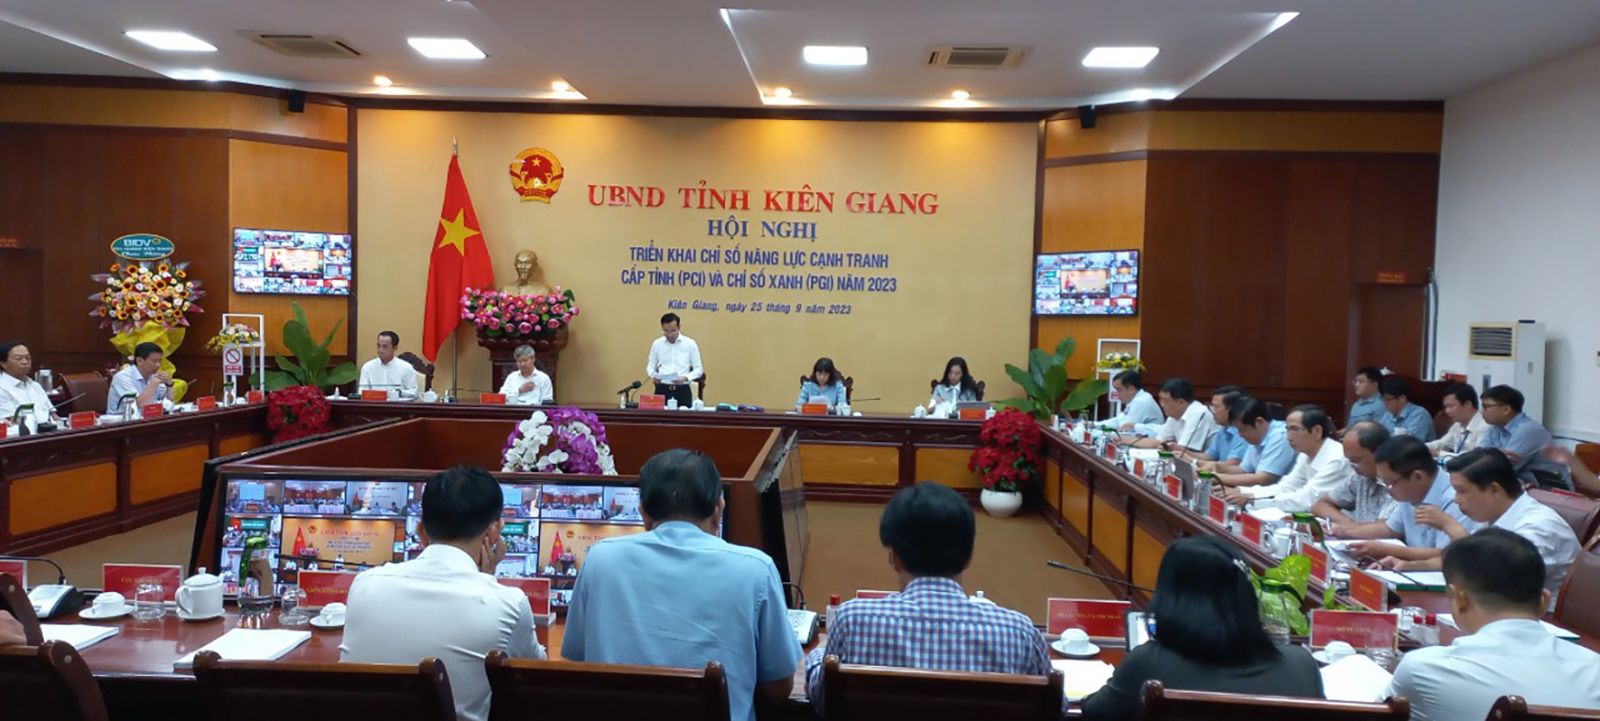  Tỉnh Kiên Giang đã ban hành kế hoạch và tổ chức Hội nghị triển khai Chỉ số PCI và Chỉ số xanh (PGI) năm 2023 trên địa bàn tỉnh.